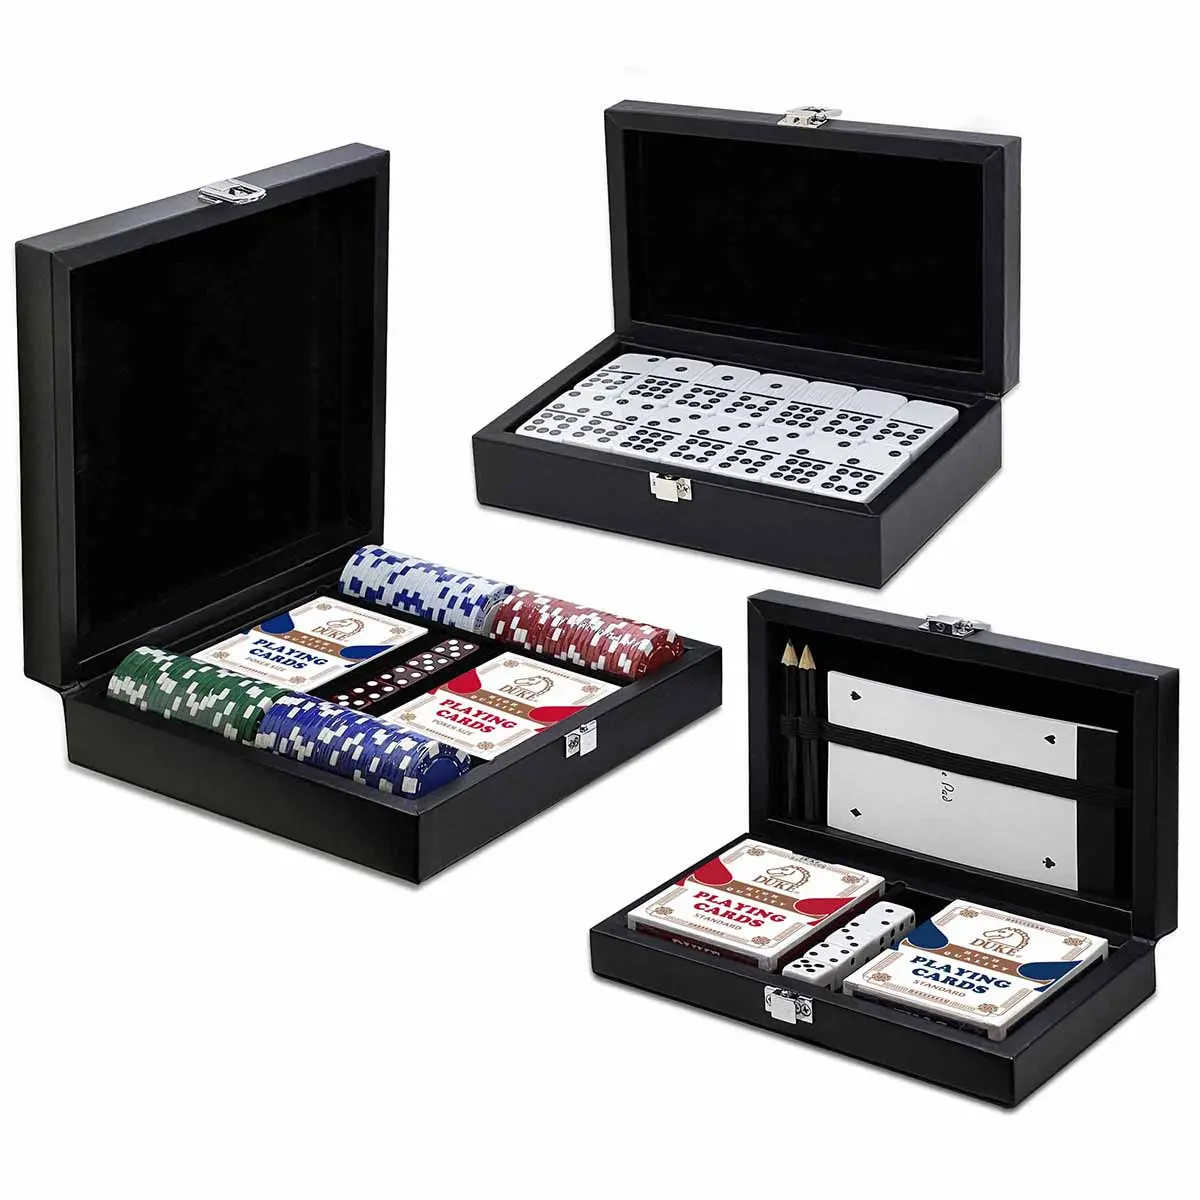 Coleção de jogos de tabuleiro Muti em preto fosco